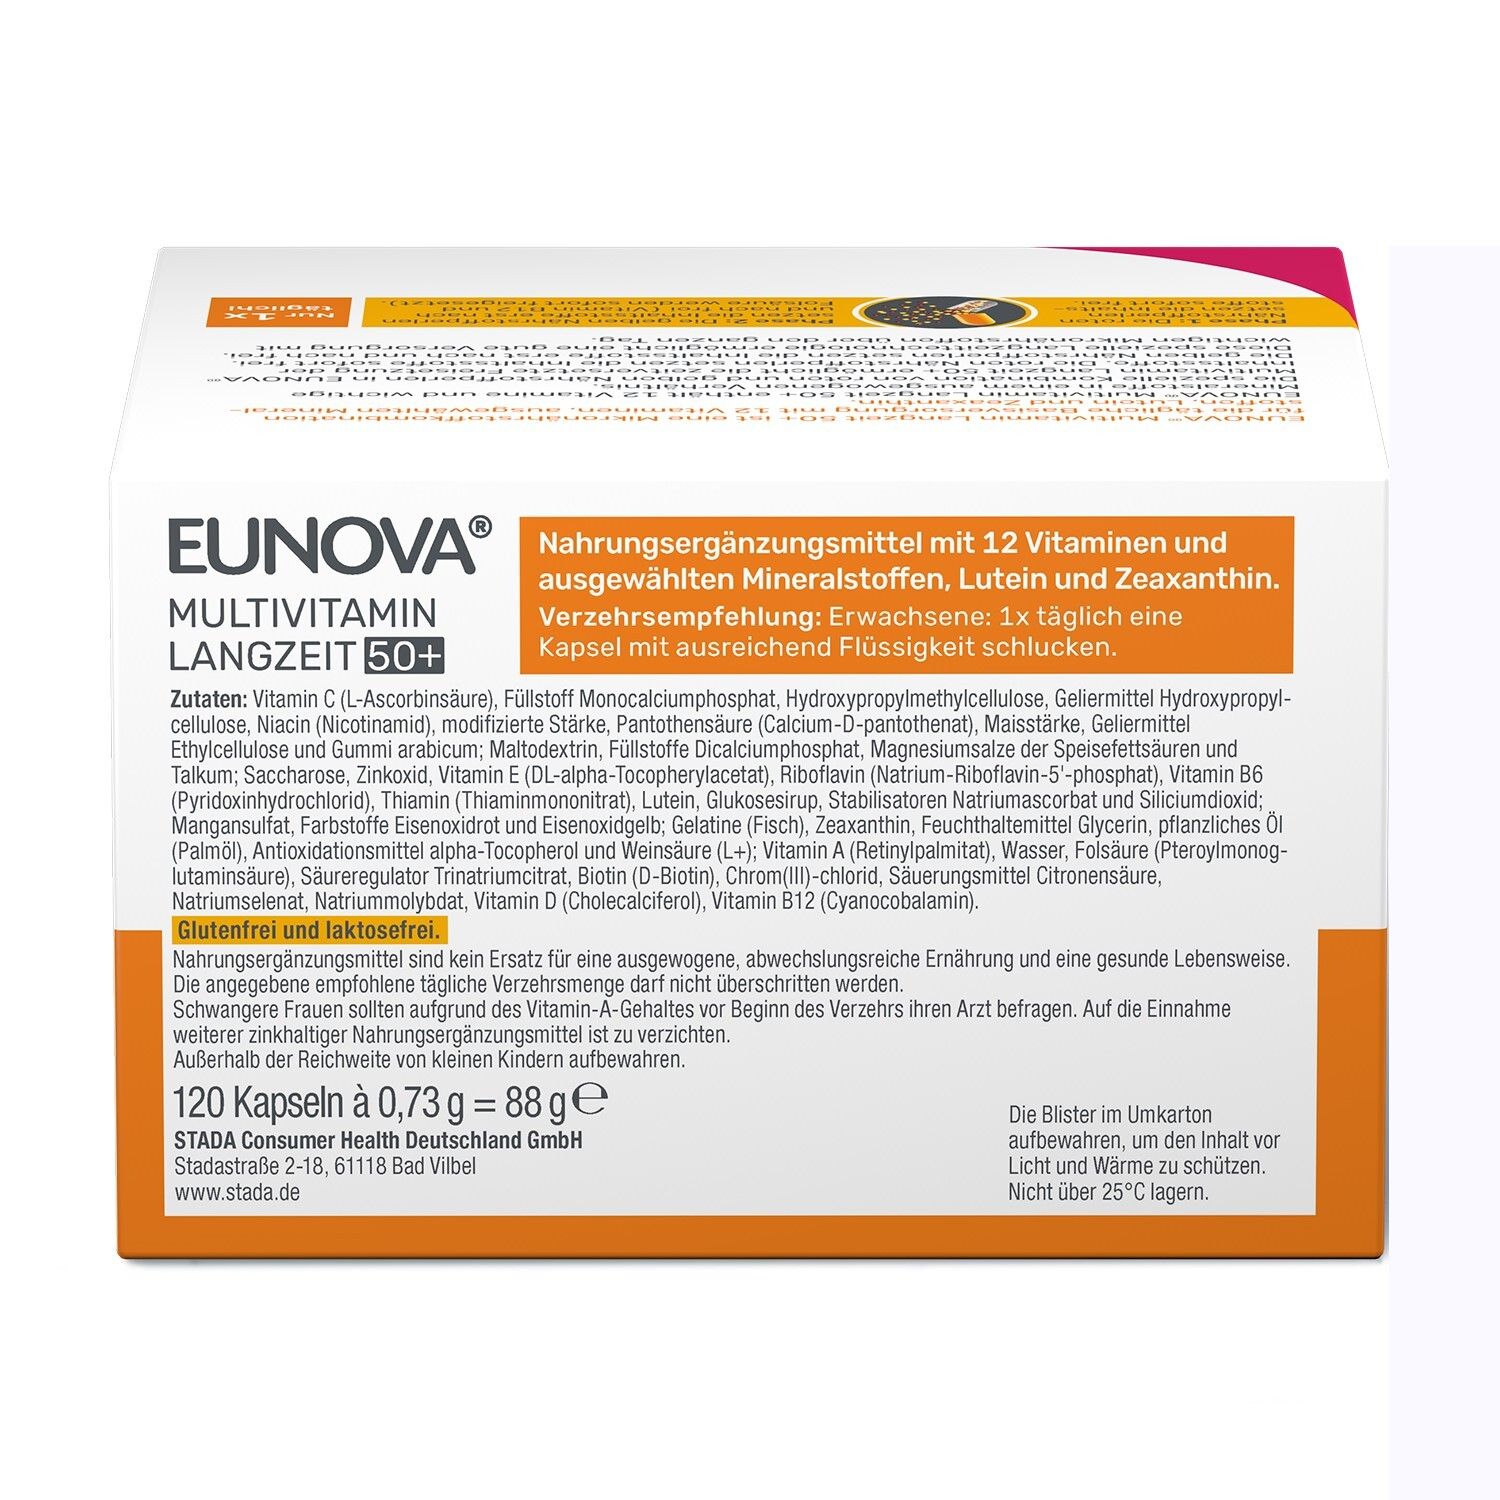 EUNOVA® Langzeit 50+ - Multivitaminpräparat für Menschen ab 50 Jahren